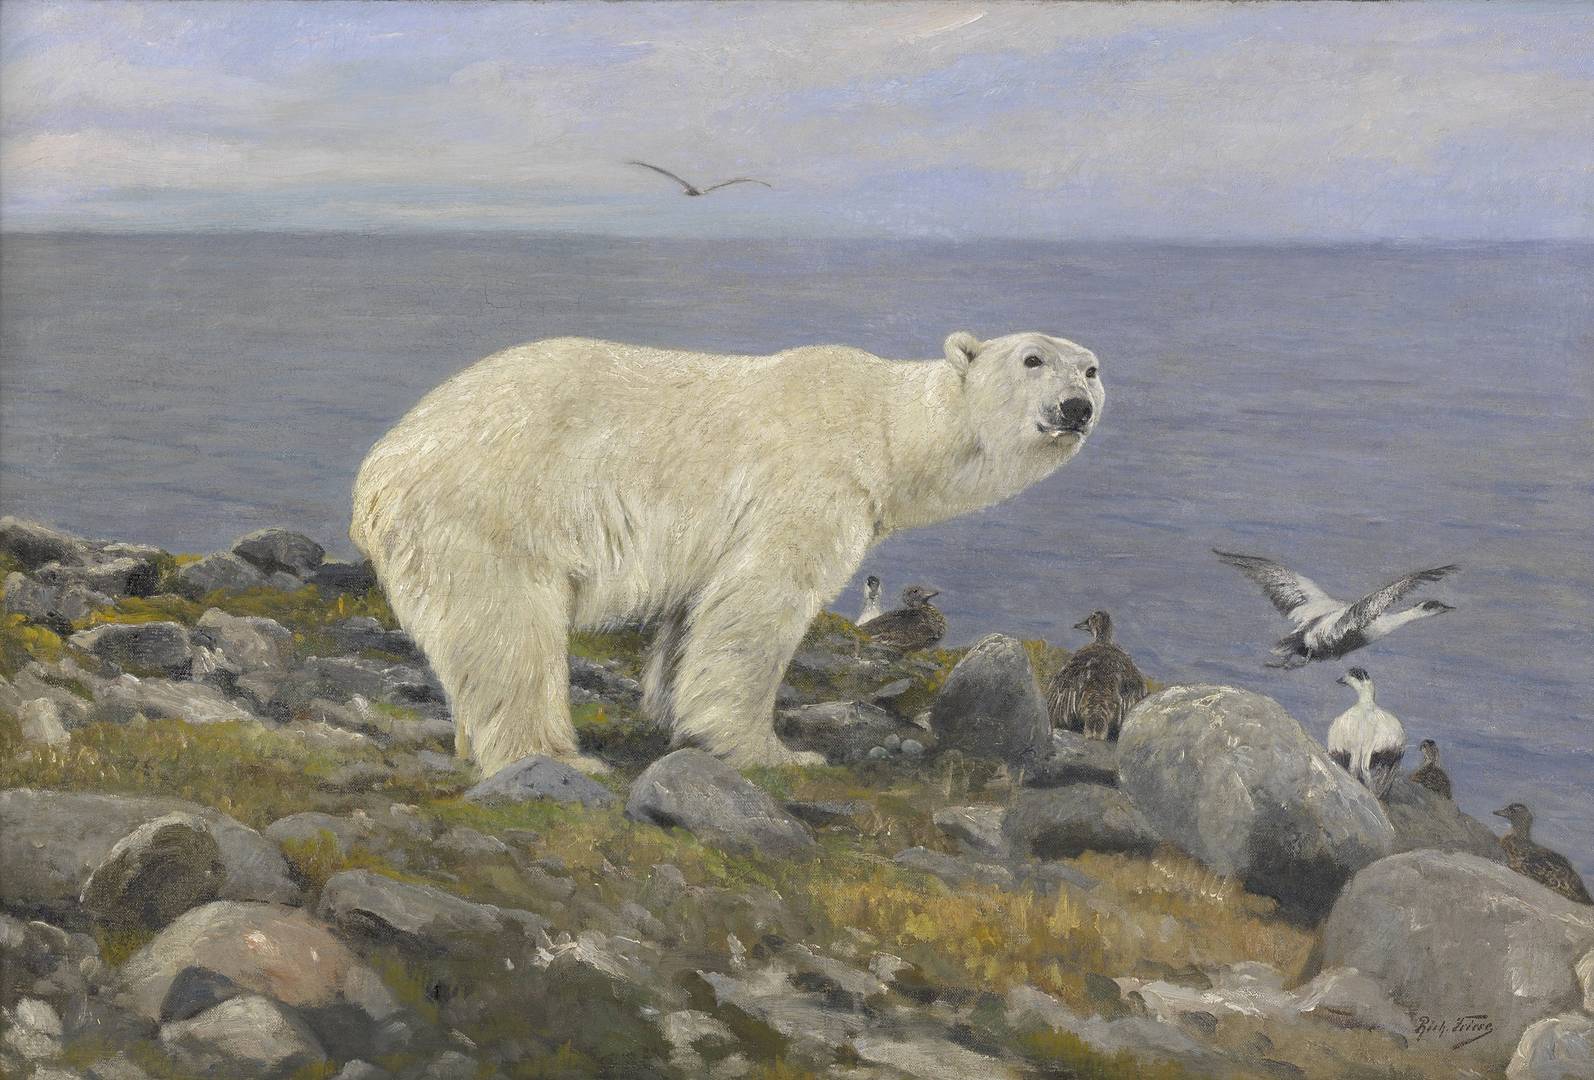 Ричард Фриз. Белый медведь и гааги на побережье. Между 1869 и 1918 гг.